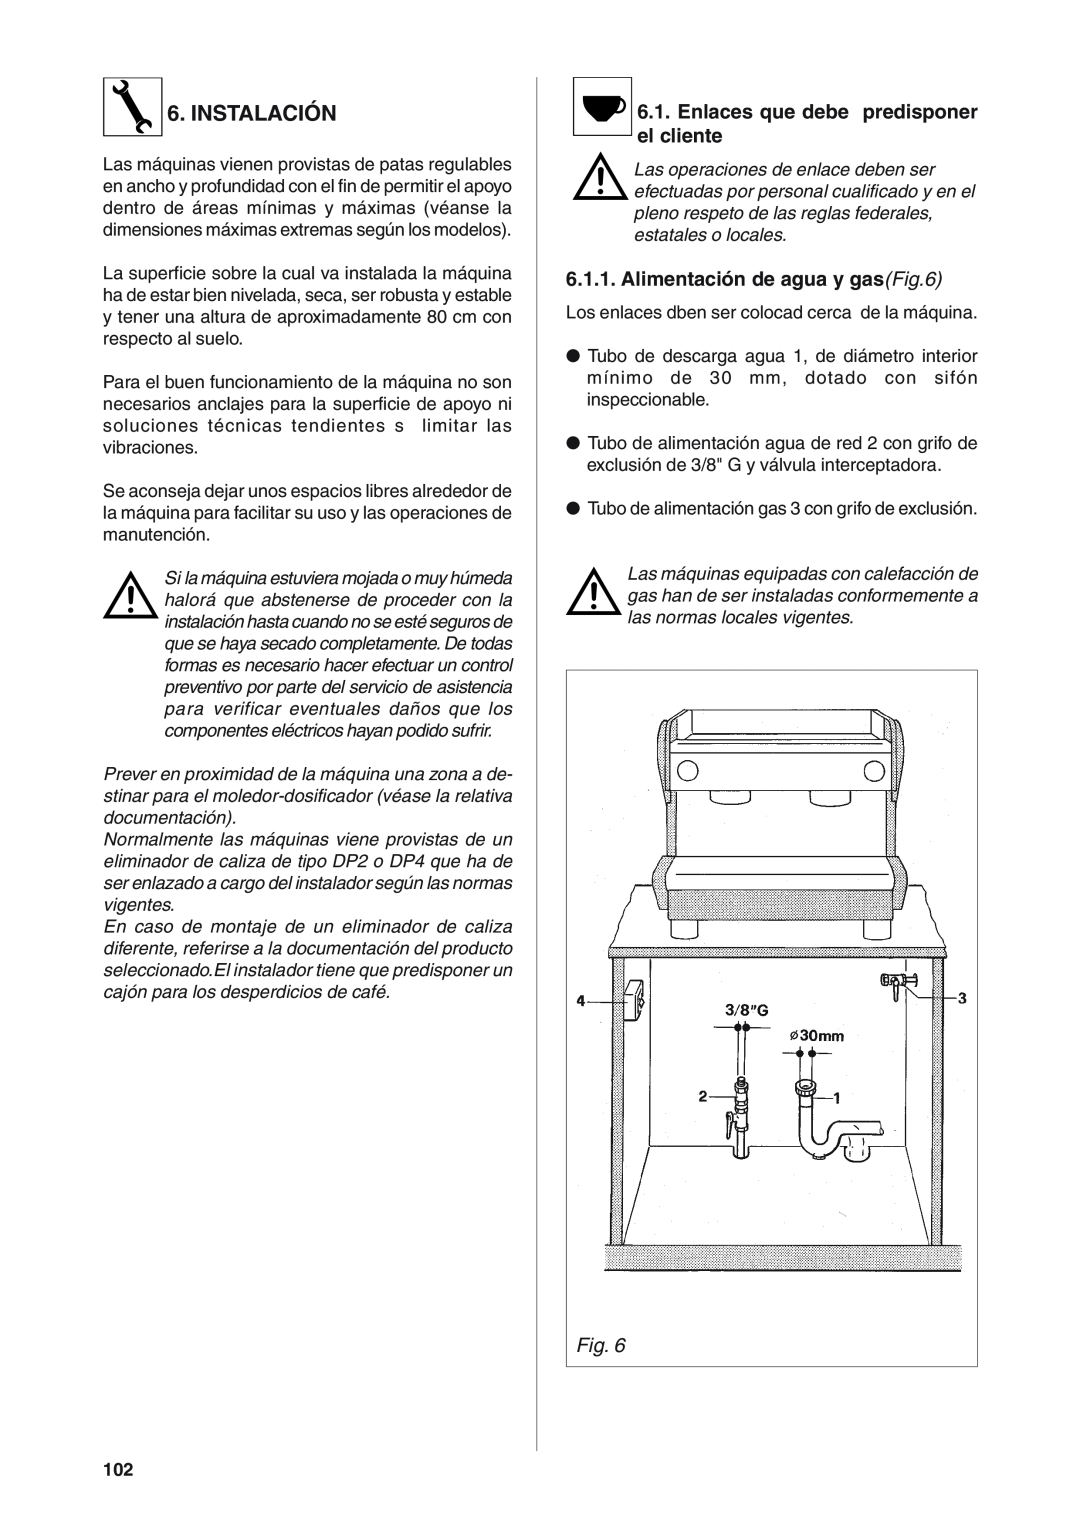 Rancilio S20 manual Instalación, Enlaces que debe predisponer el cliente, Alimentación de agua y gasFig.6 